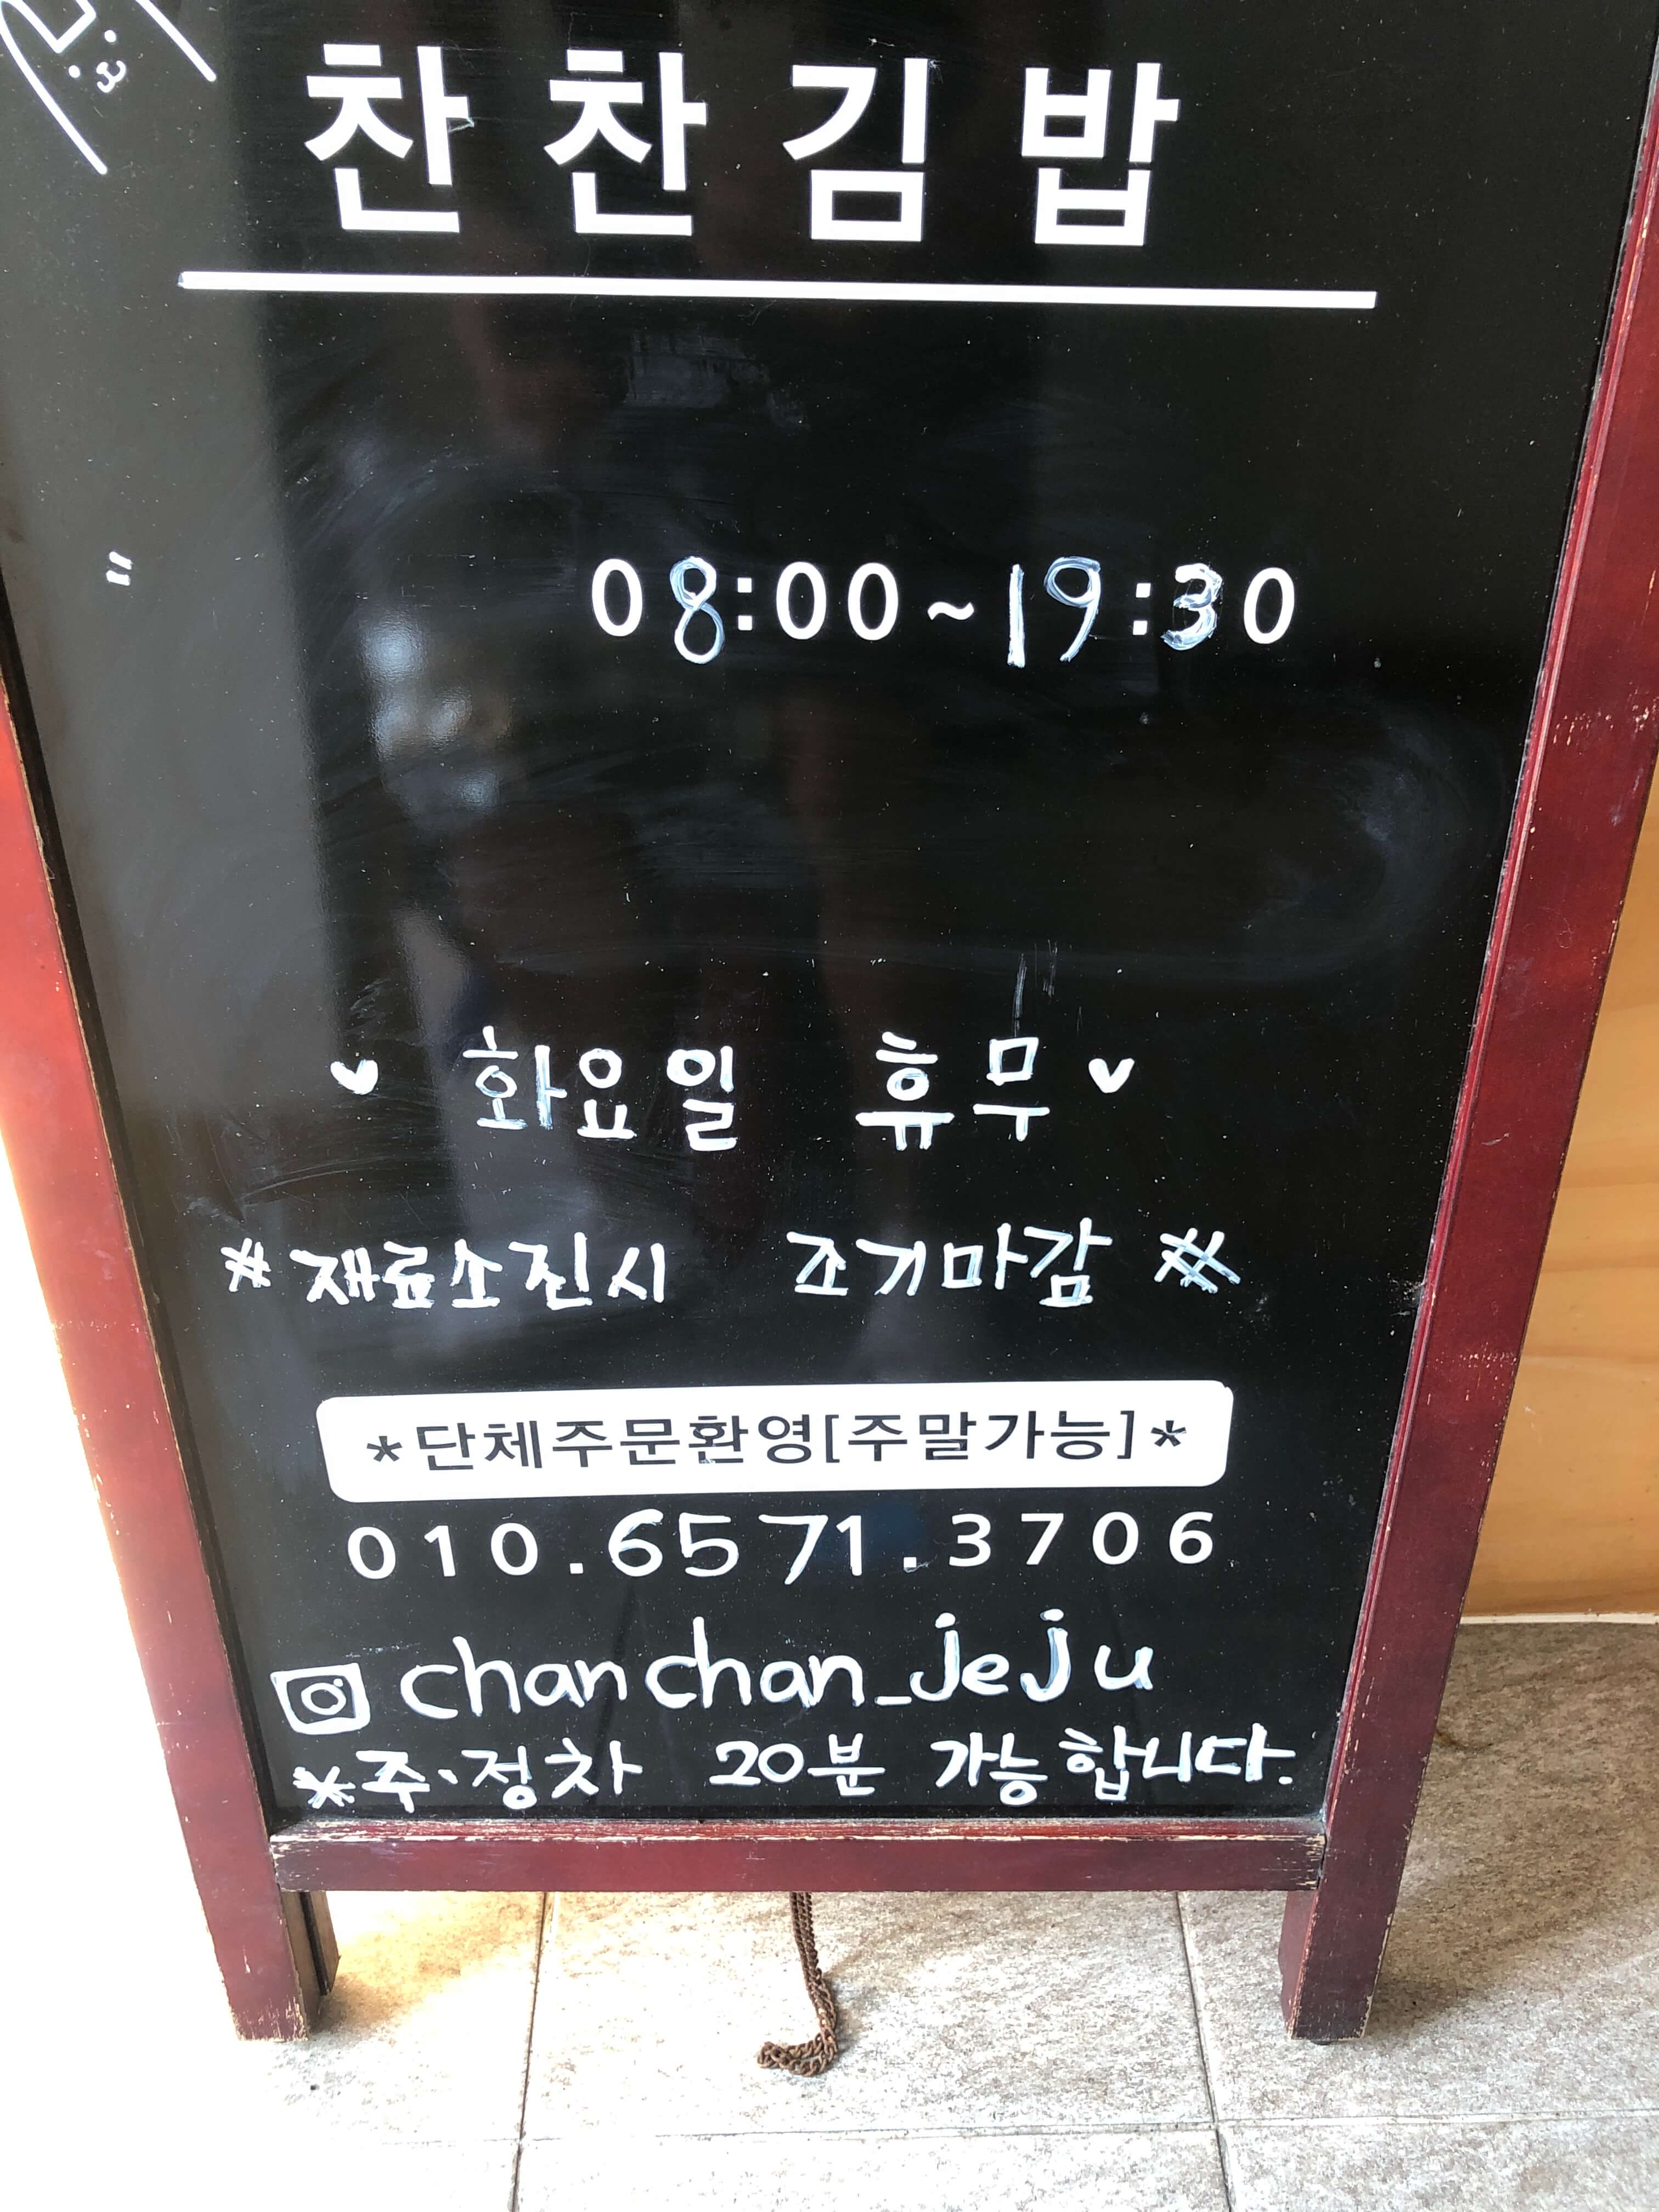 민수랜드-제주찬찬김밥 영업시간